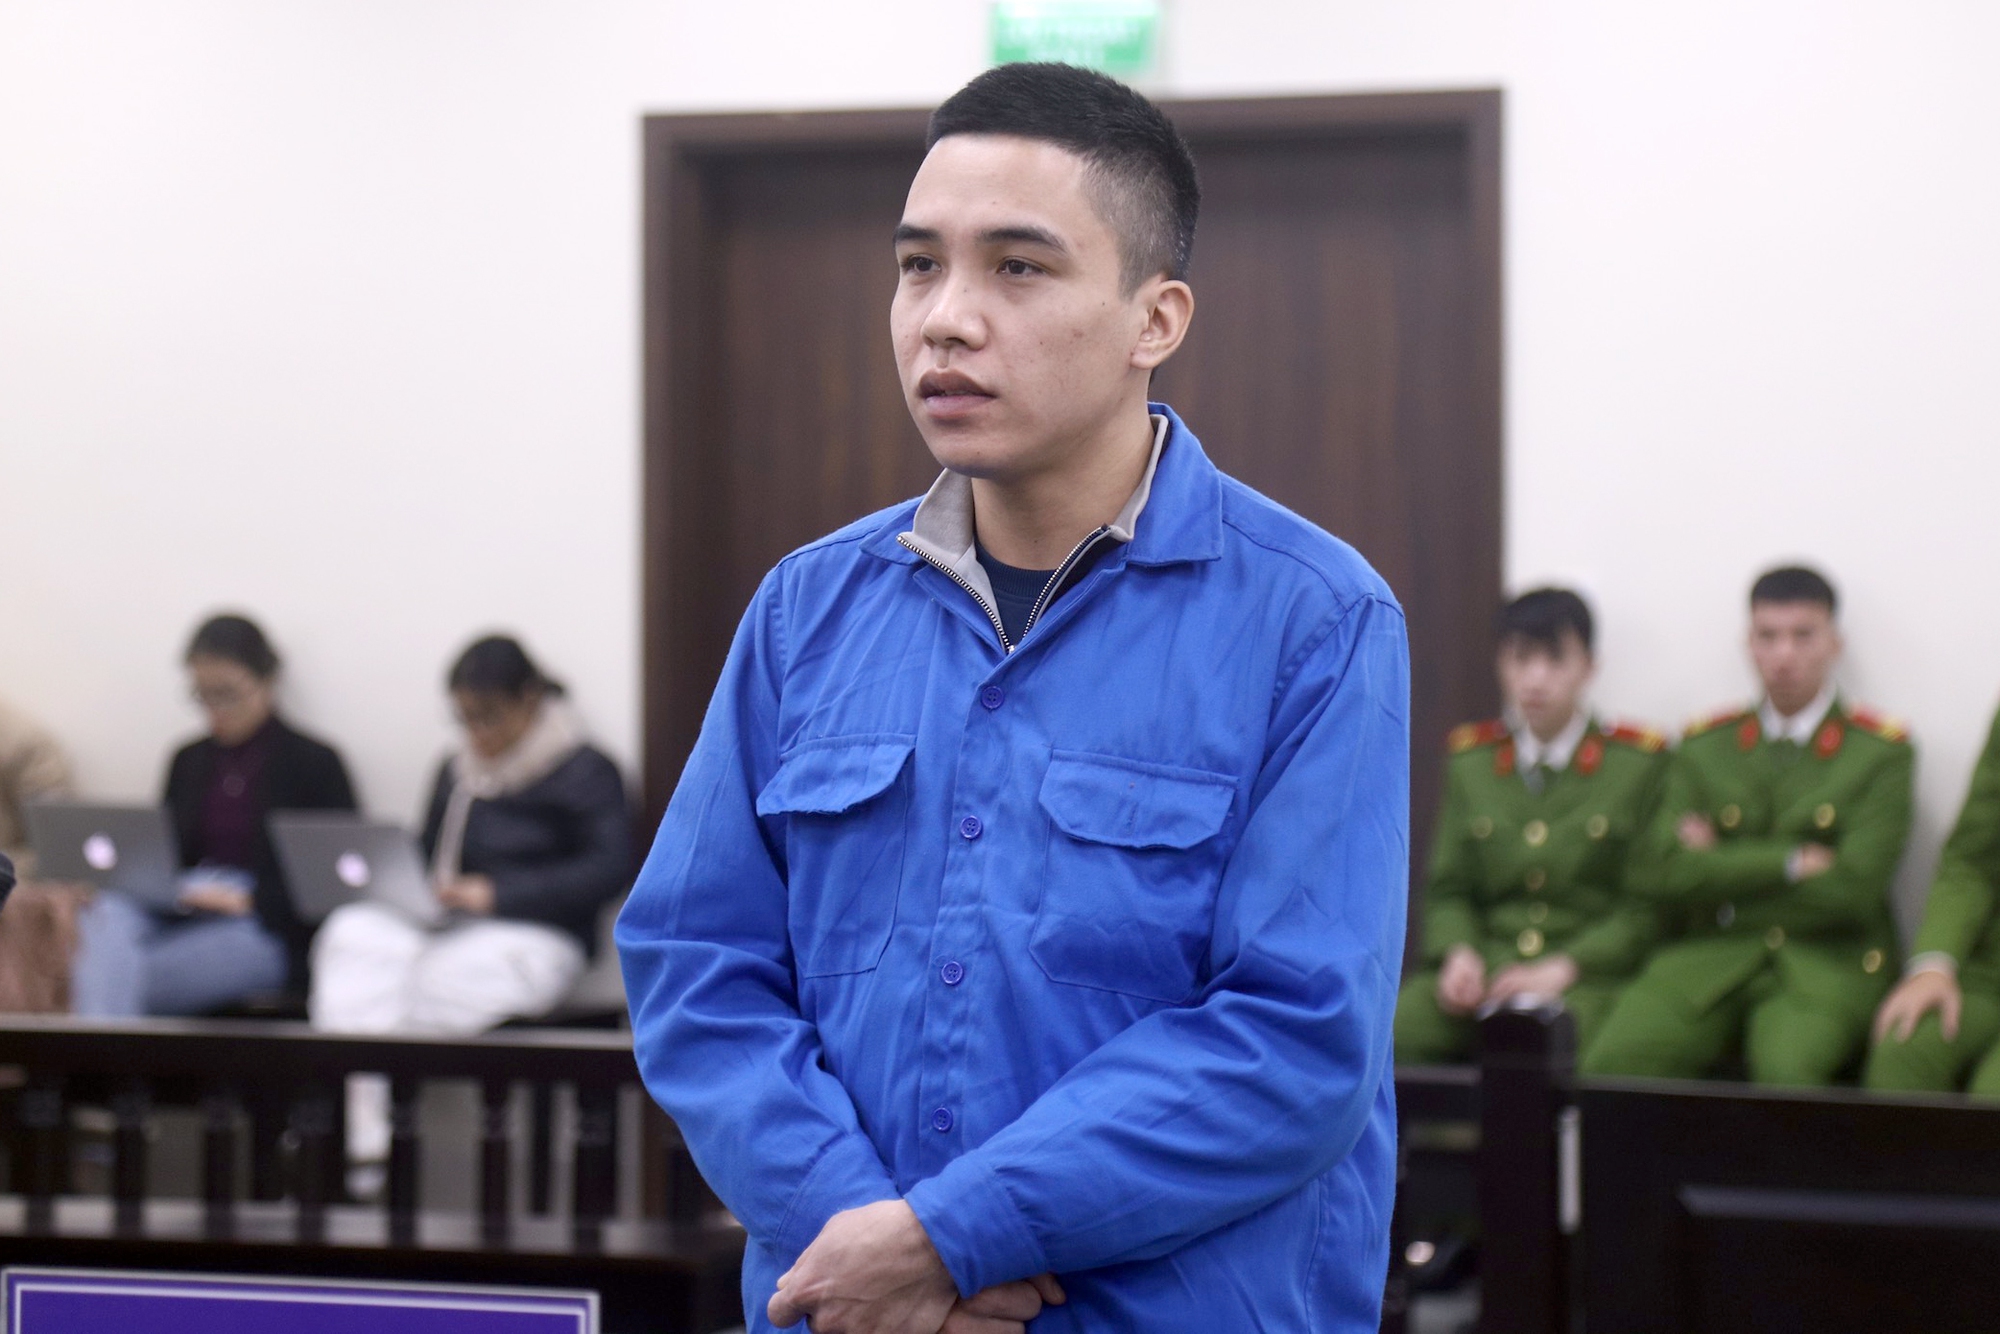 Cựu CSGT bắt cóc trẻ em ở Hà Nội bị phạt 20 năm tù - Ảnh 1.